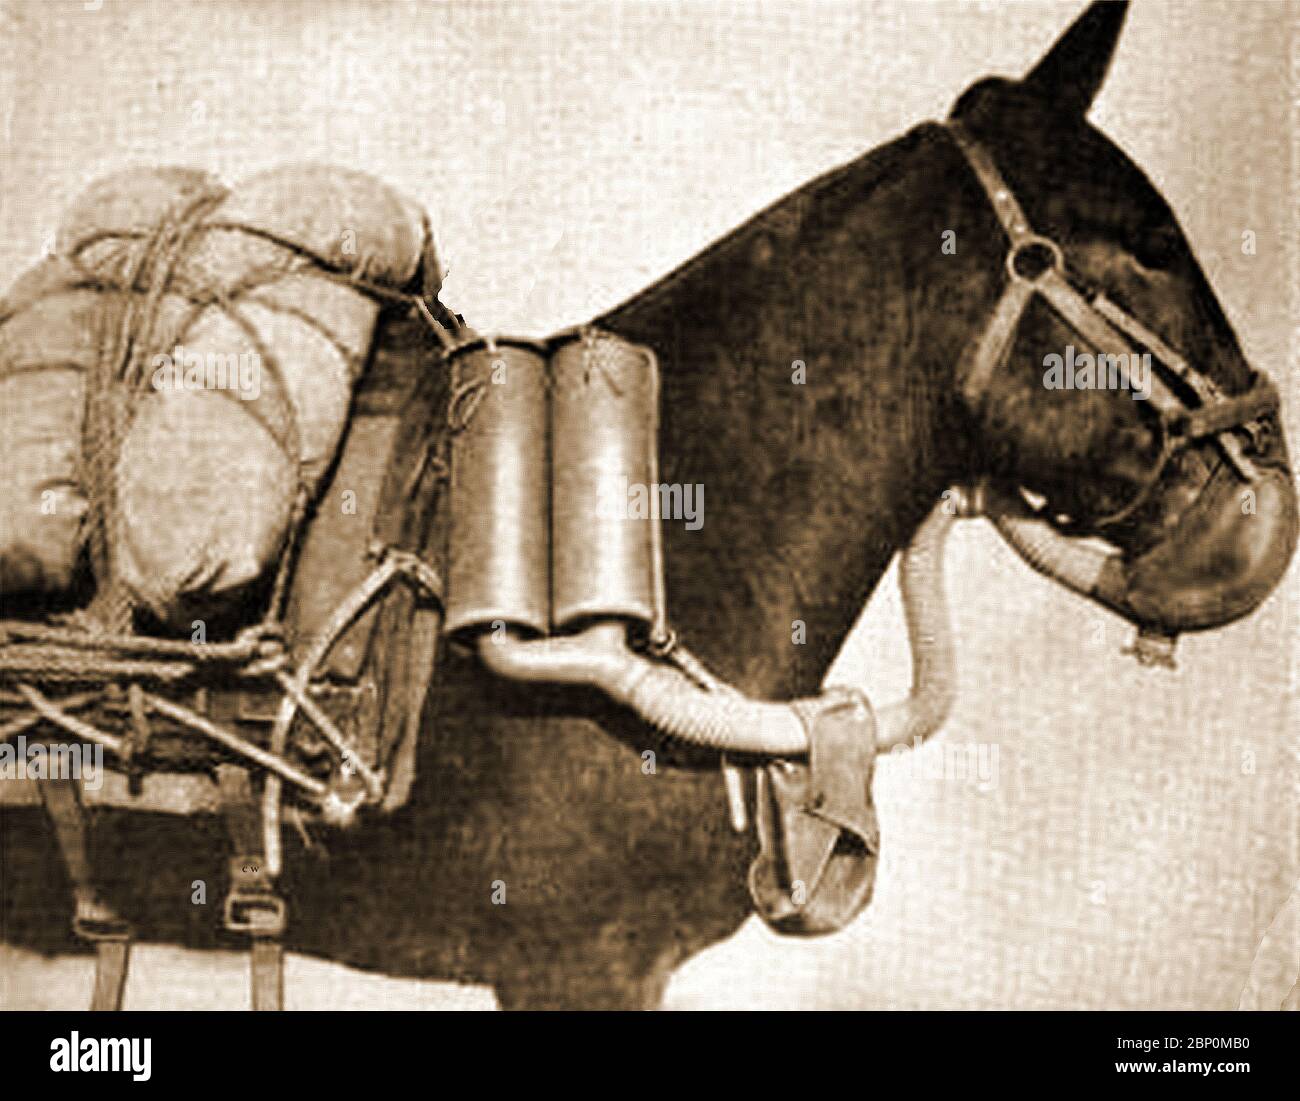 WWI - IMPIANTI PER MUNIZIONI NEL REGNO UNITO. Un aspetto poco noto del lavoro di munizioni era la fabbricazione di maschere a gas per cavalli Foto Stock